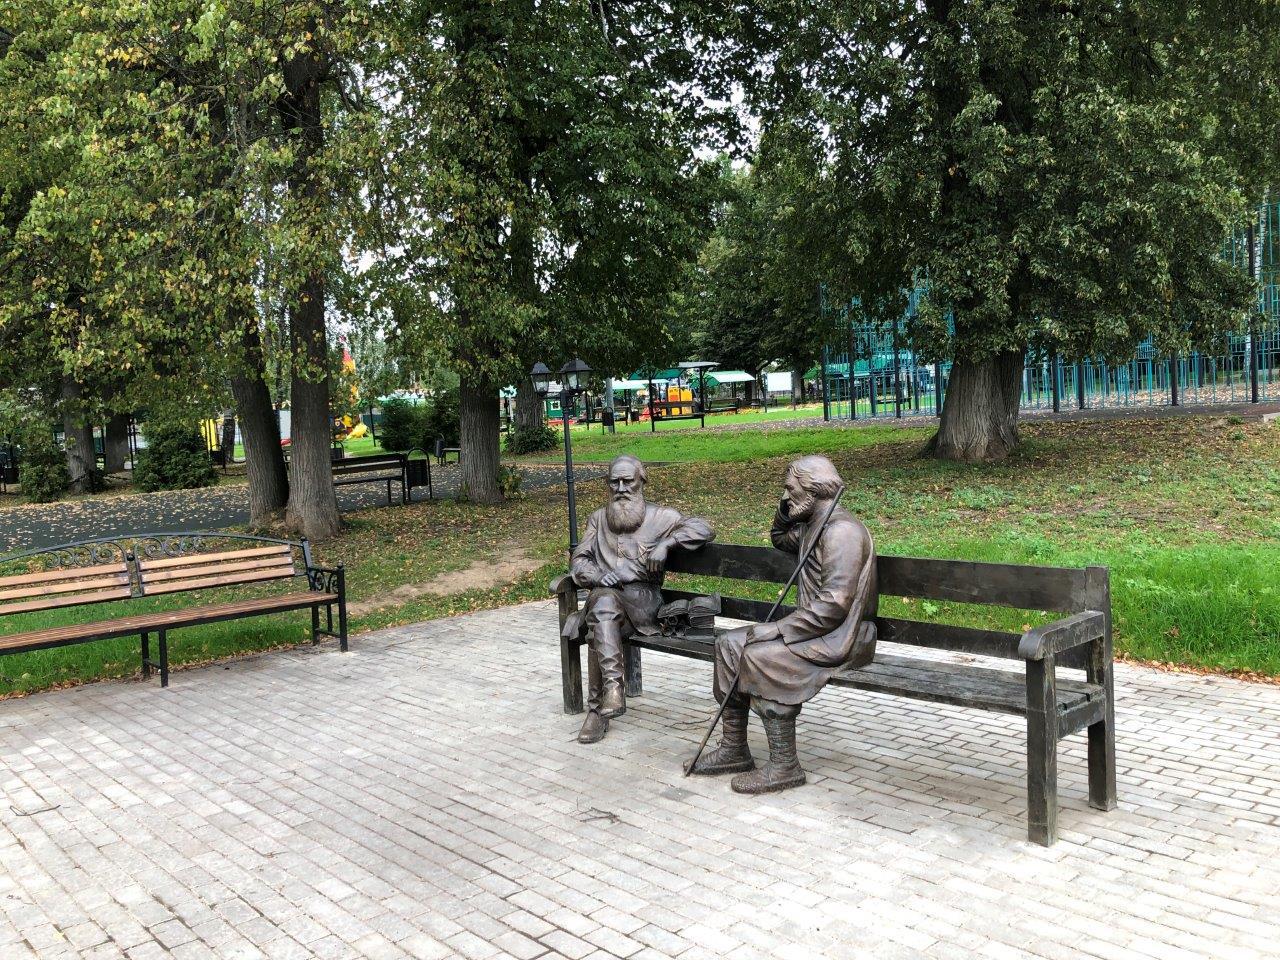 Лев Толстой и Владимир Чертков как будто присели отдохнуть в парке вместе с вами